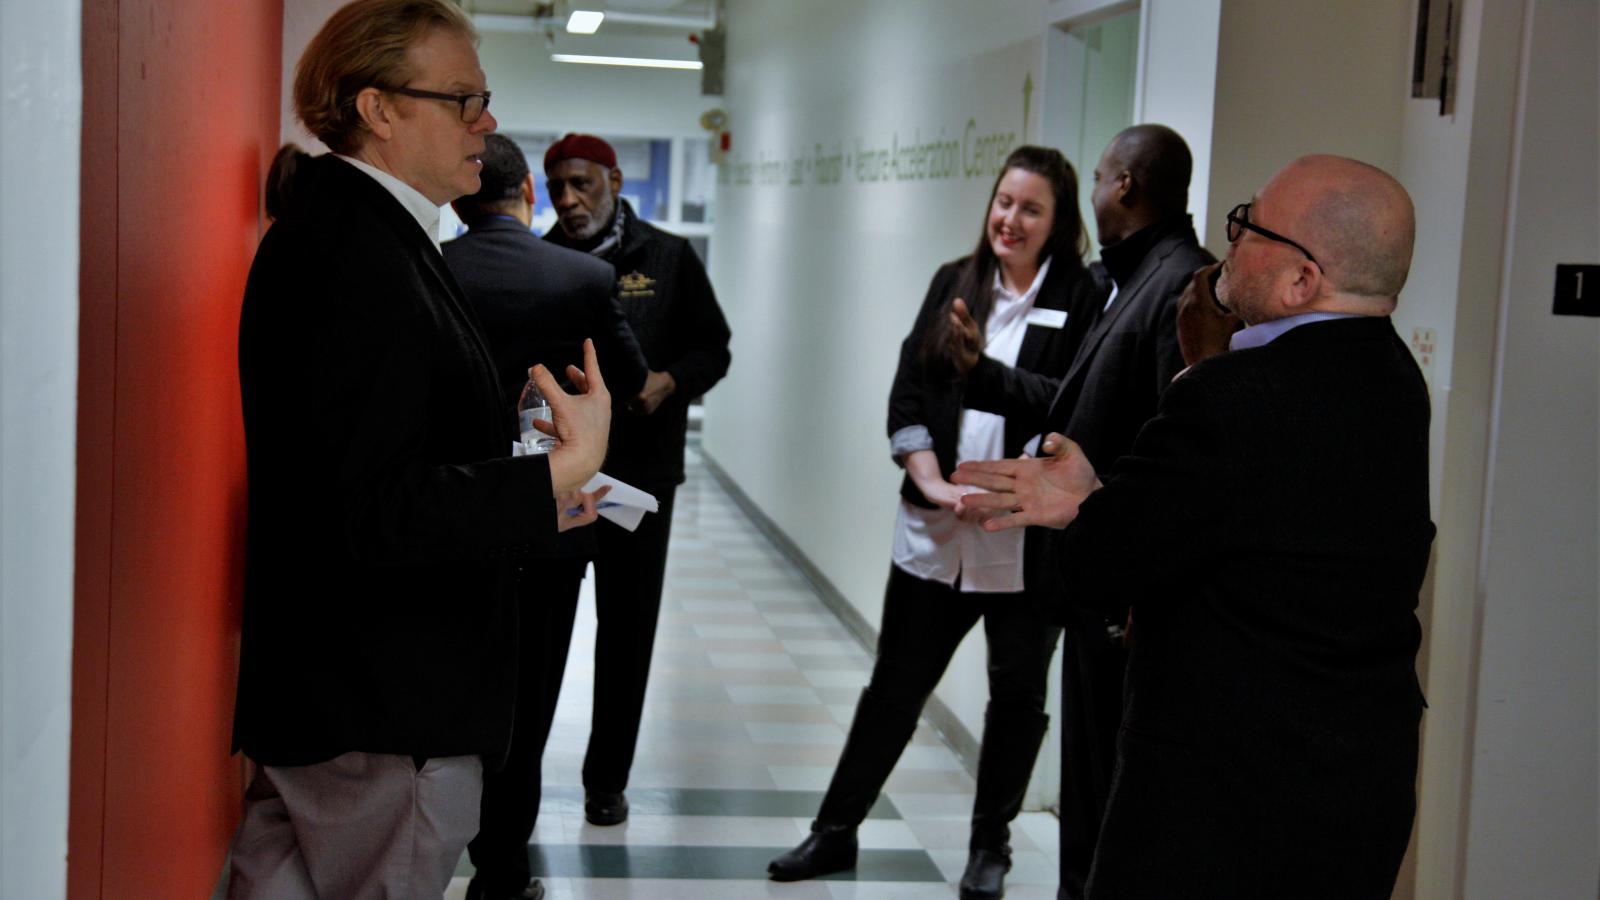 TEC staff + visitors talk in hallway